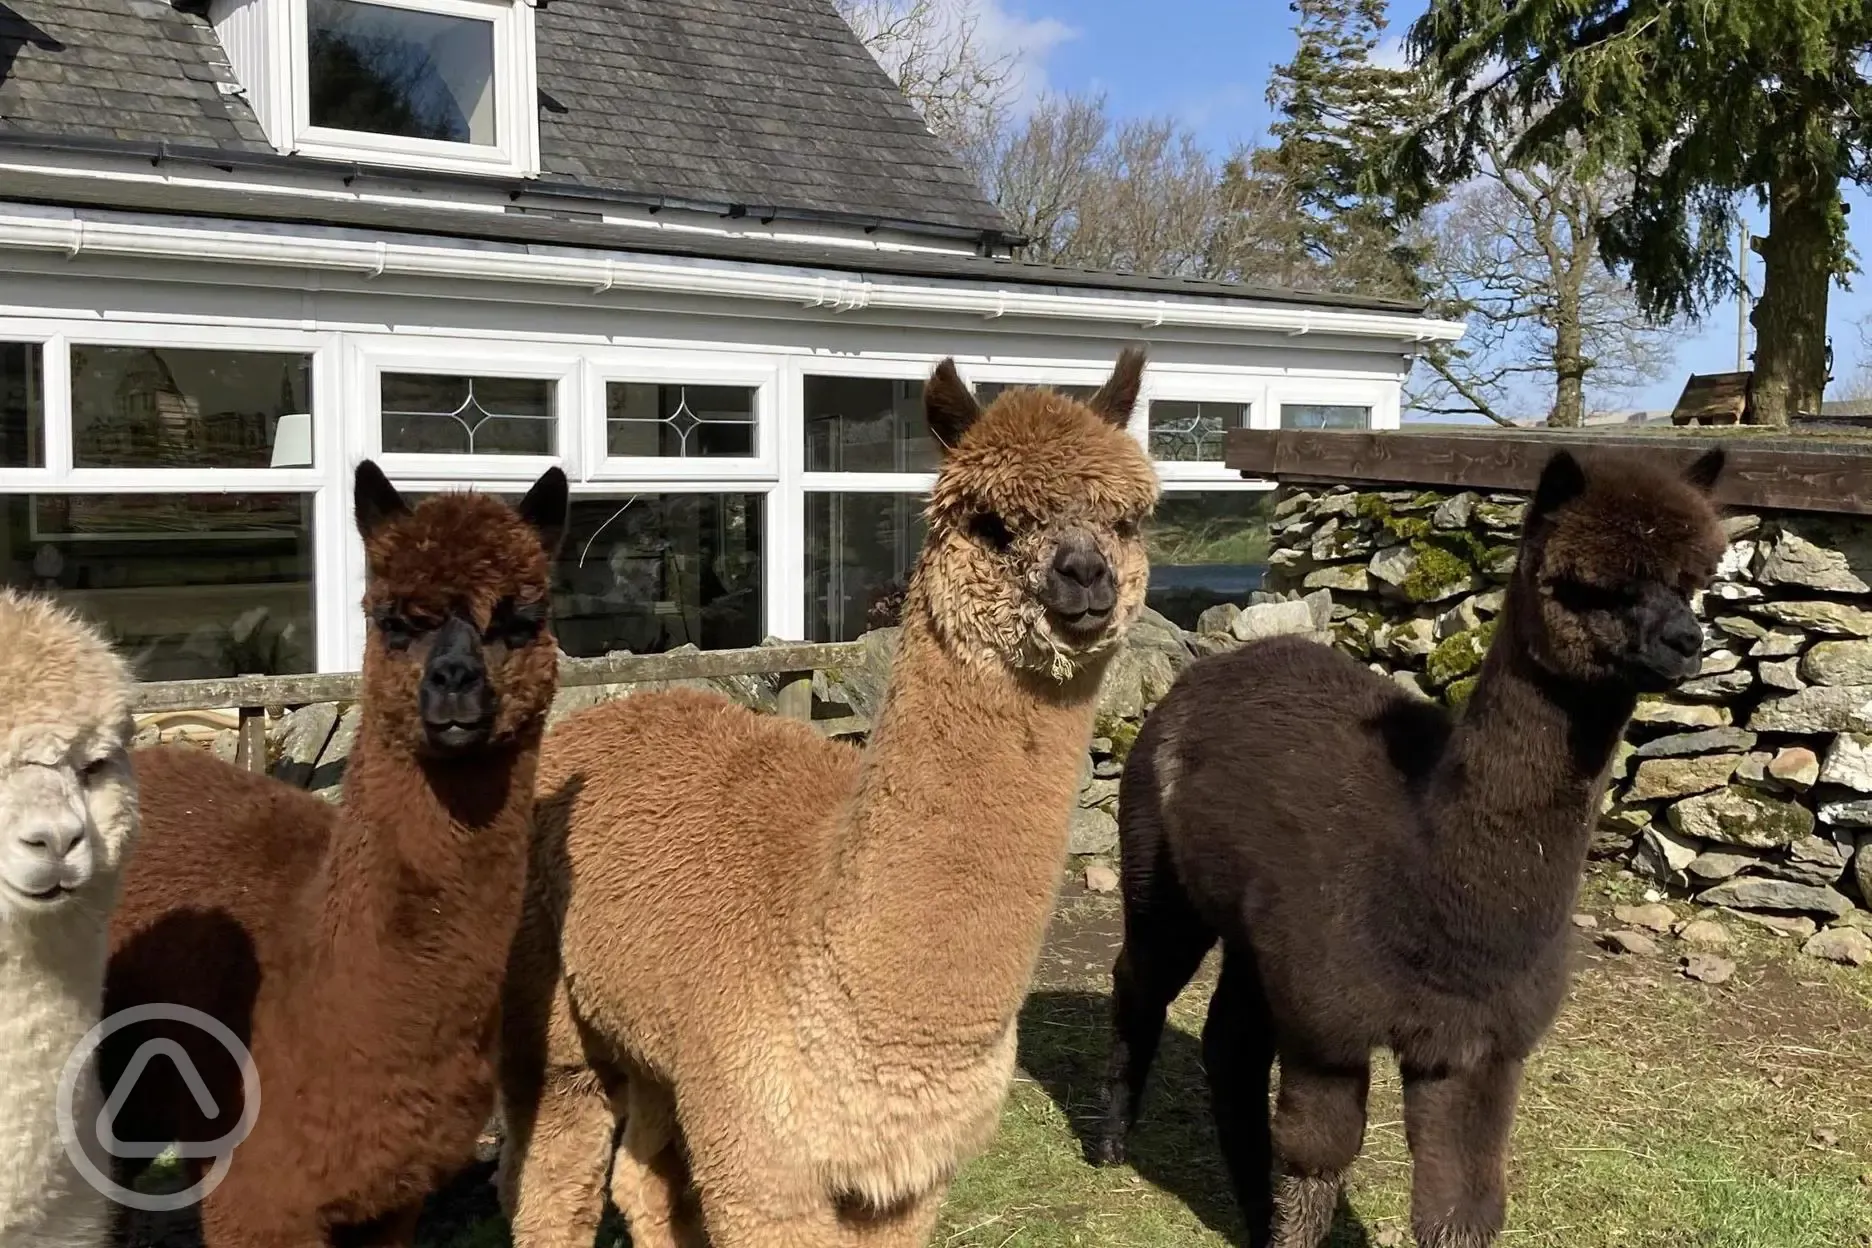 Our 4 alpacas